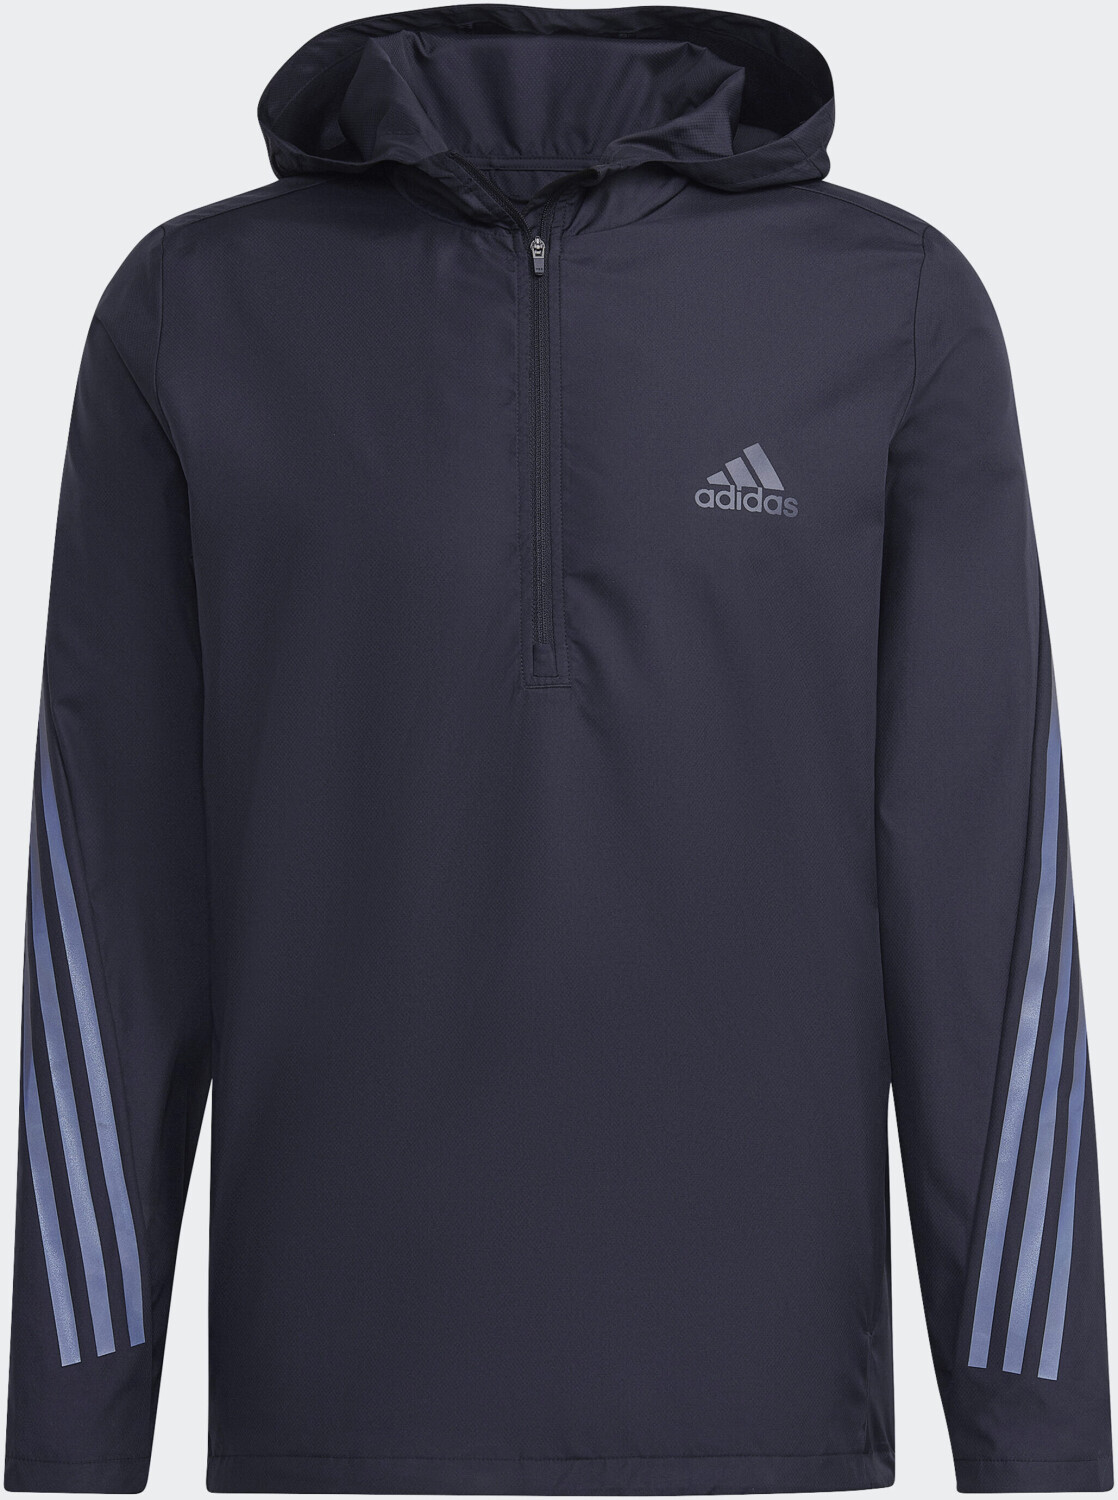 Adidas Run Icons 3-Stripe Jacket € Preisvergleich | 53,49 Men ab bei black